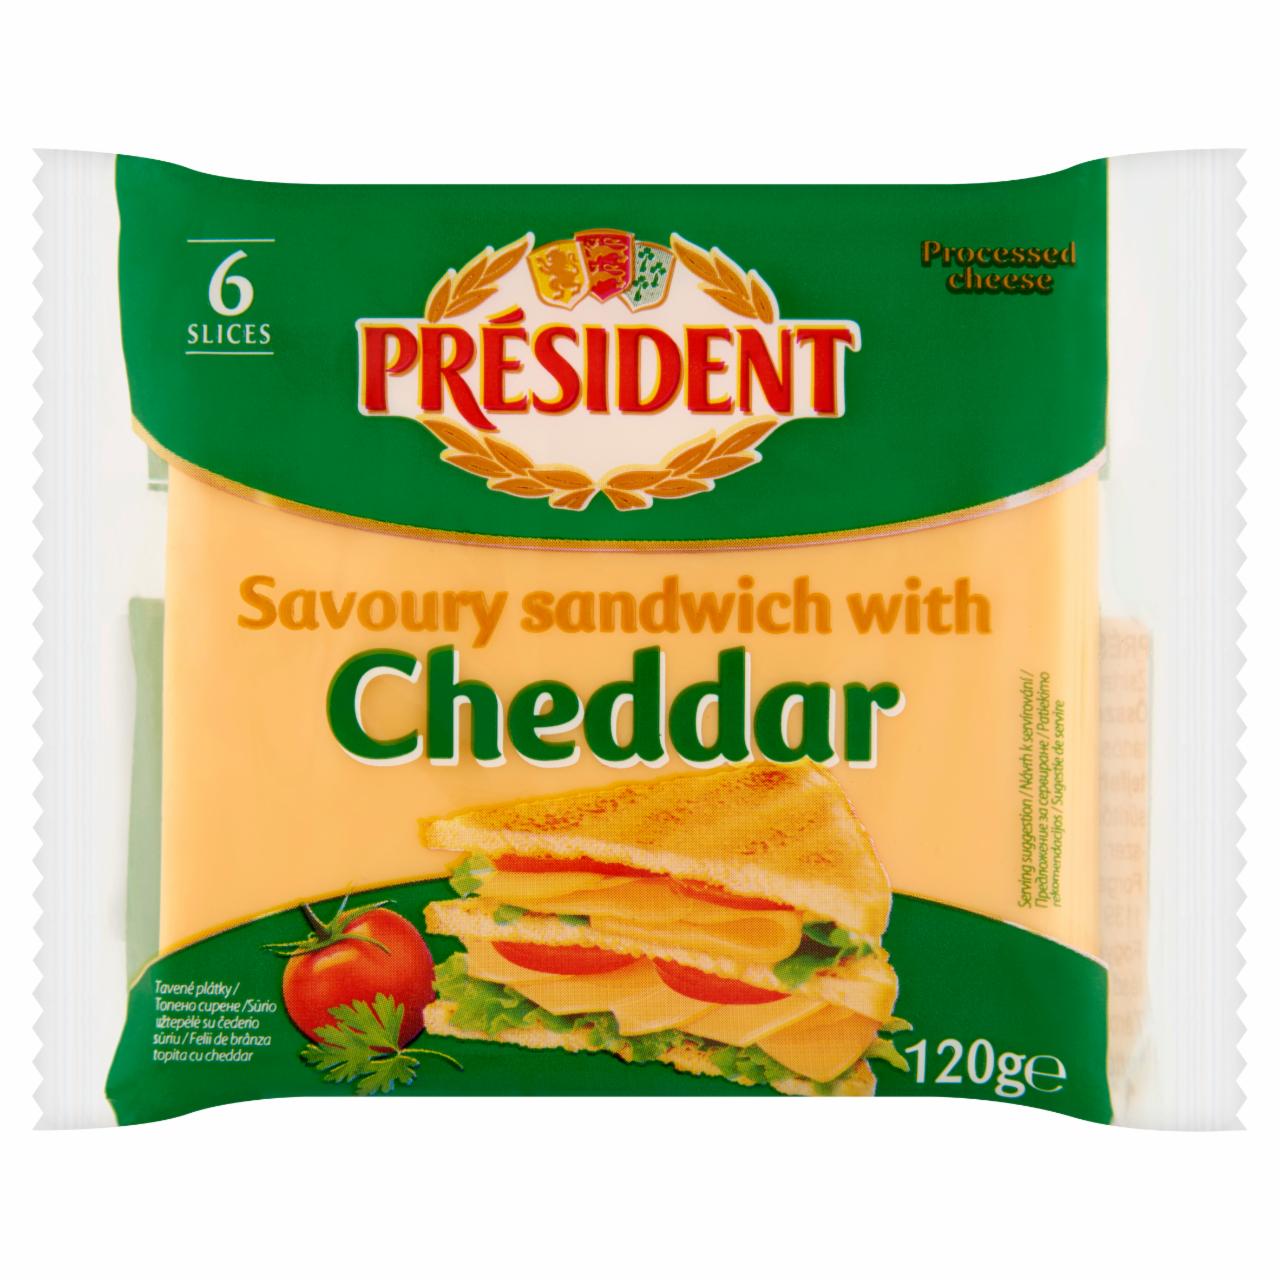 Képek - Président cheddar ízű félzsíros ömlesztett sajt 6 db 120 g